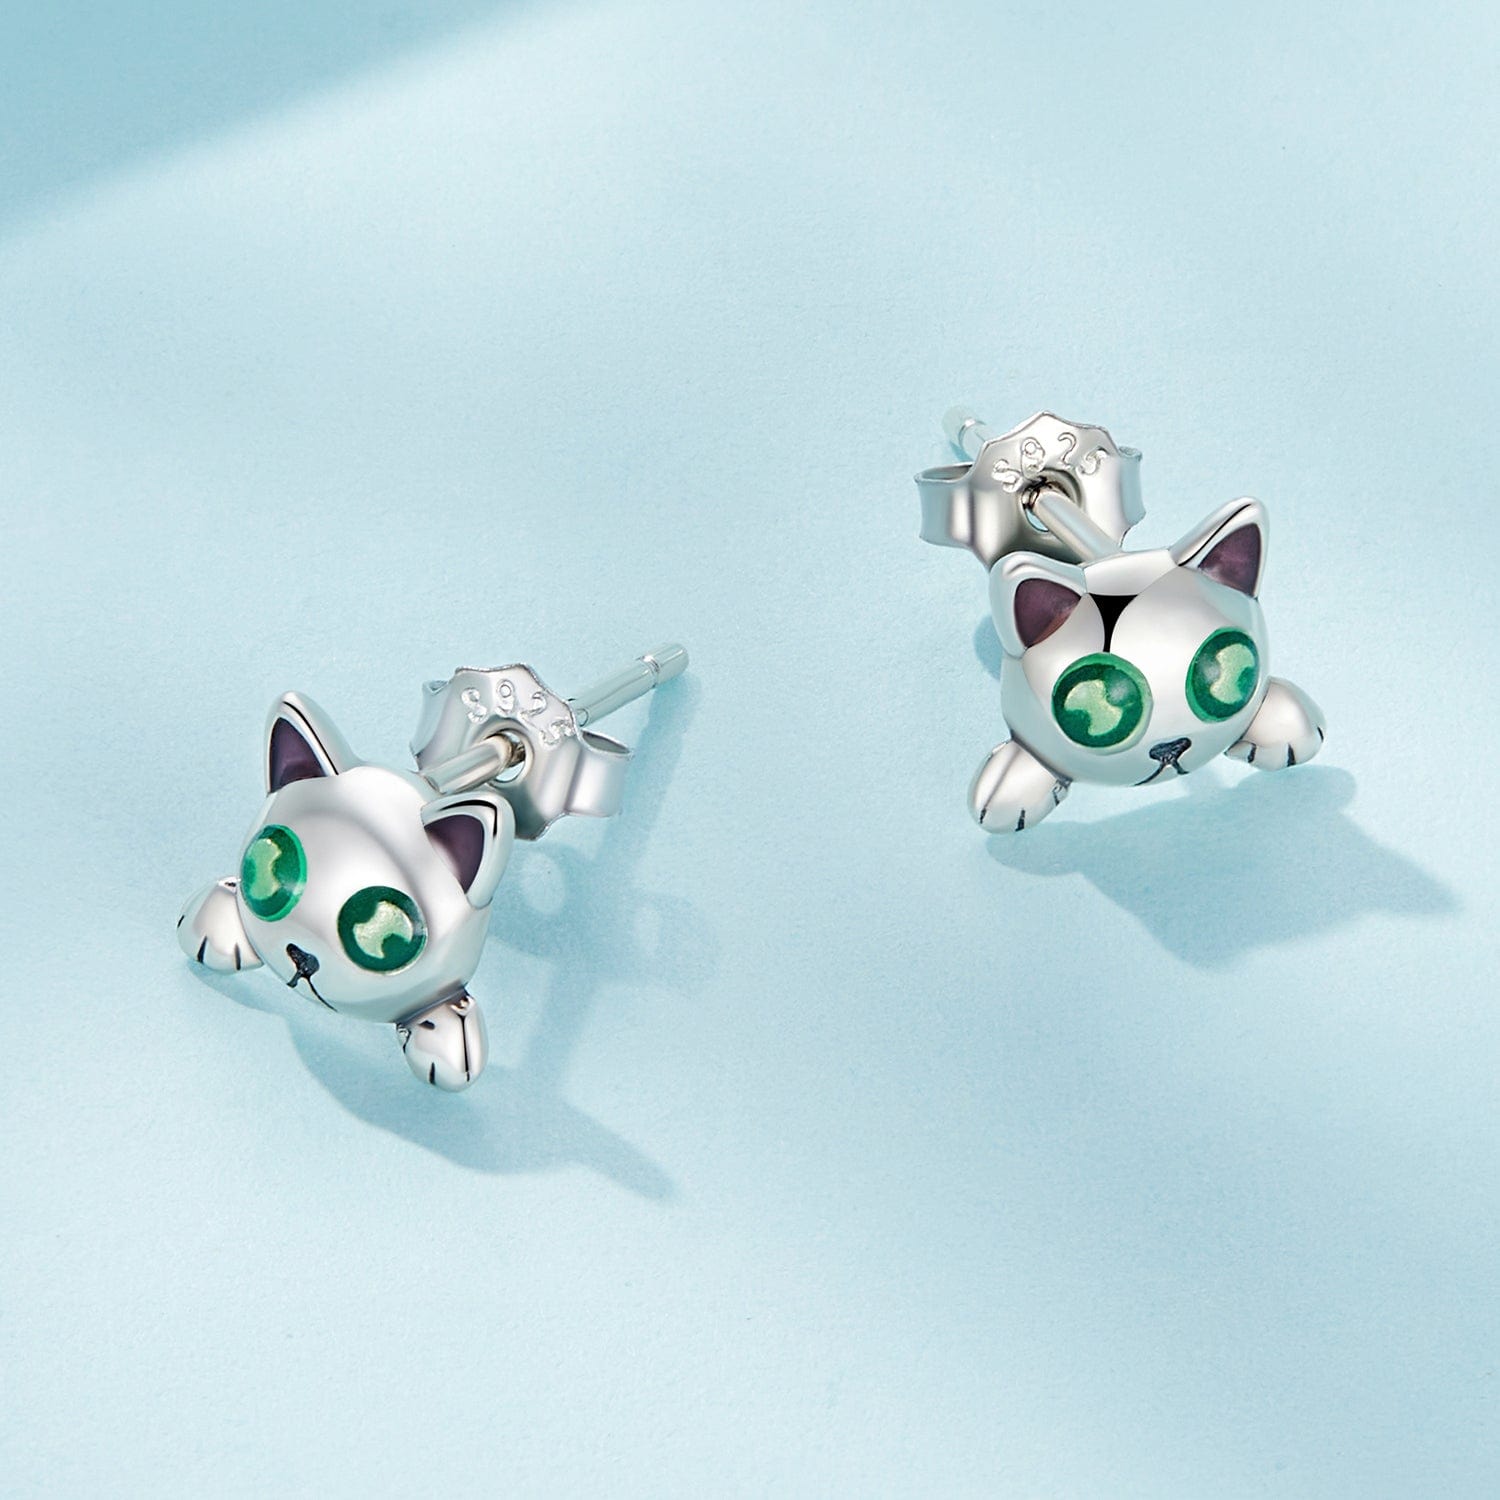 jewelaus Earrings Glowing Cat Earrings